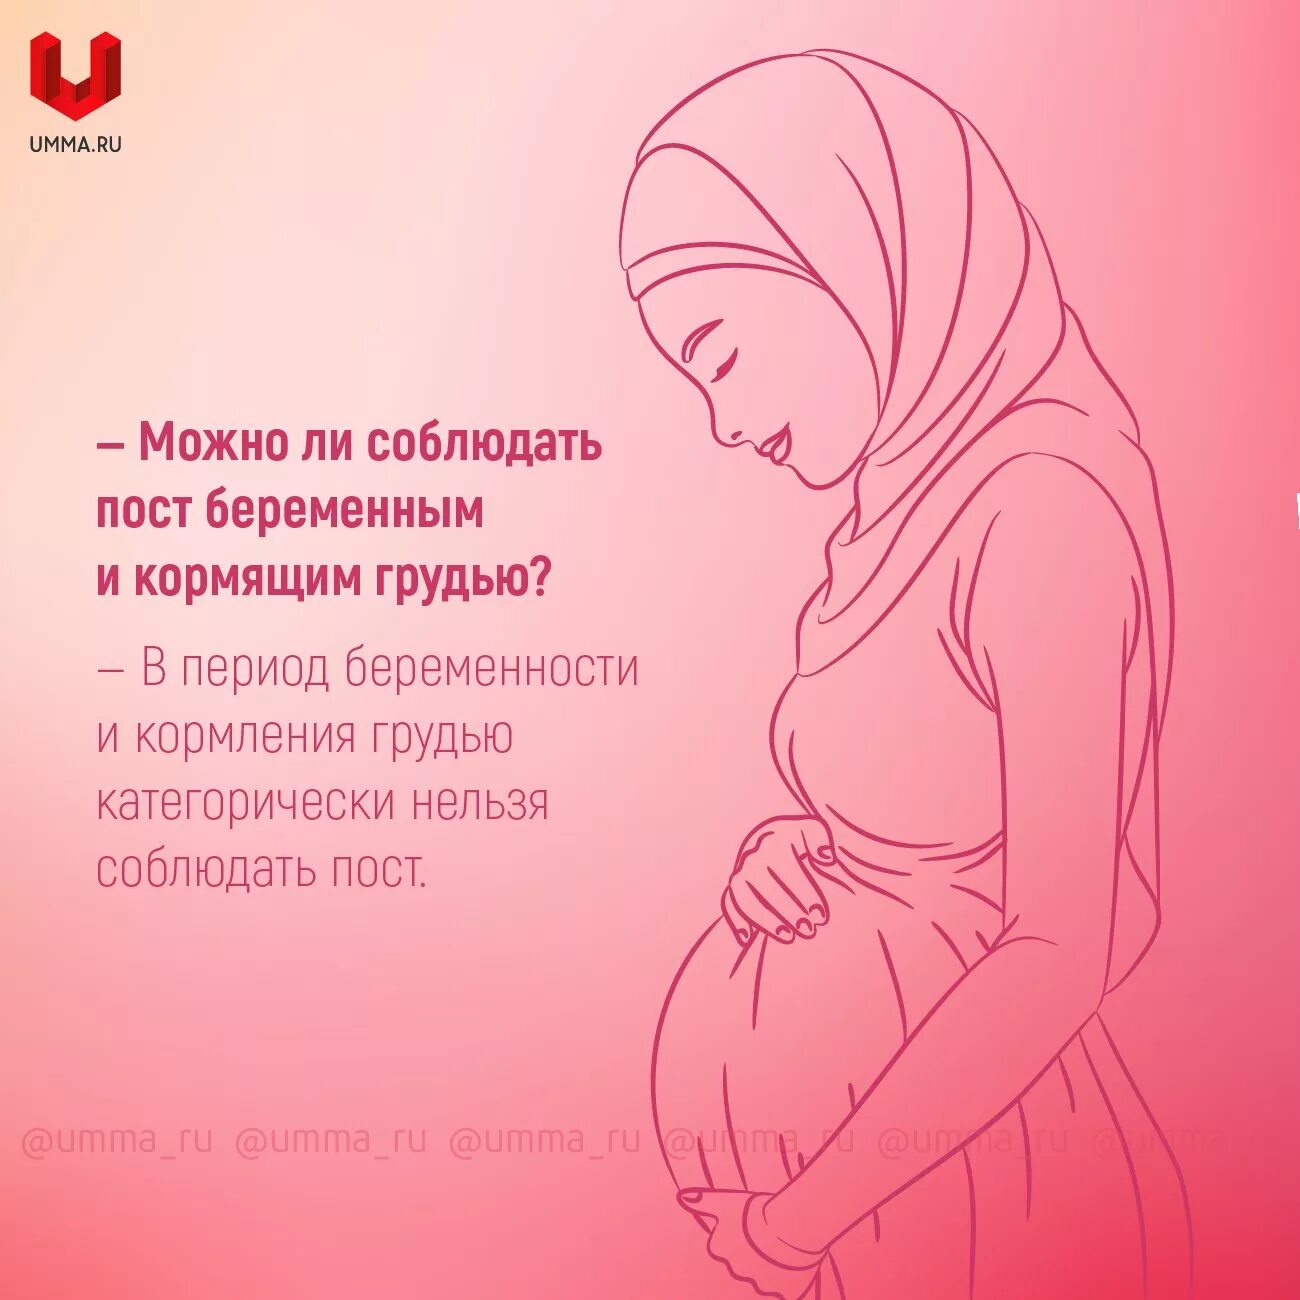 Про беременных женщин в Исламе. Дуа для кормления грудью. Хадисы про беременных. Можно ли поститься кормящей